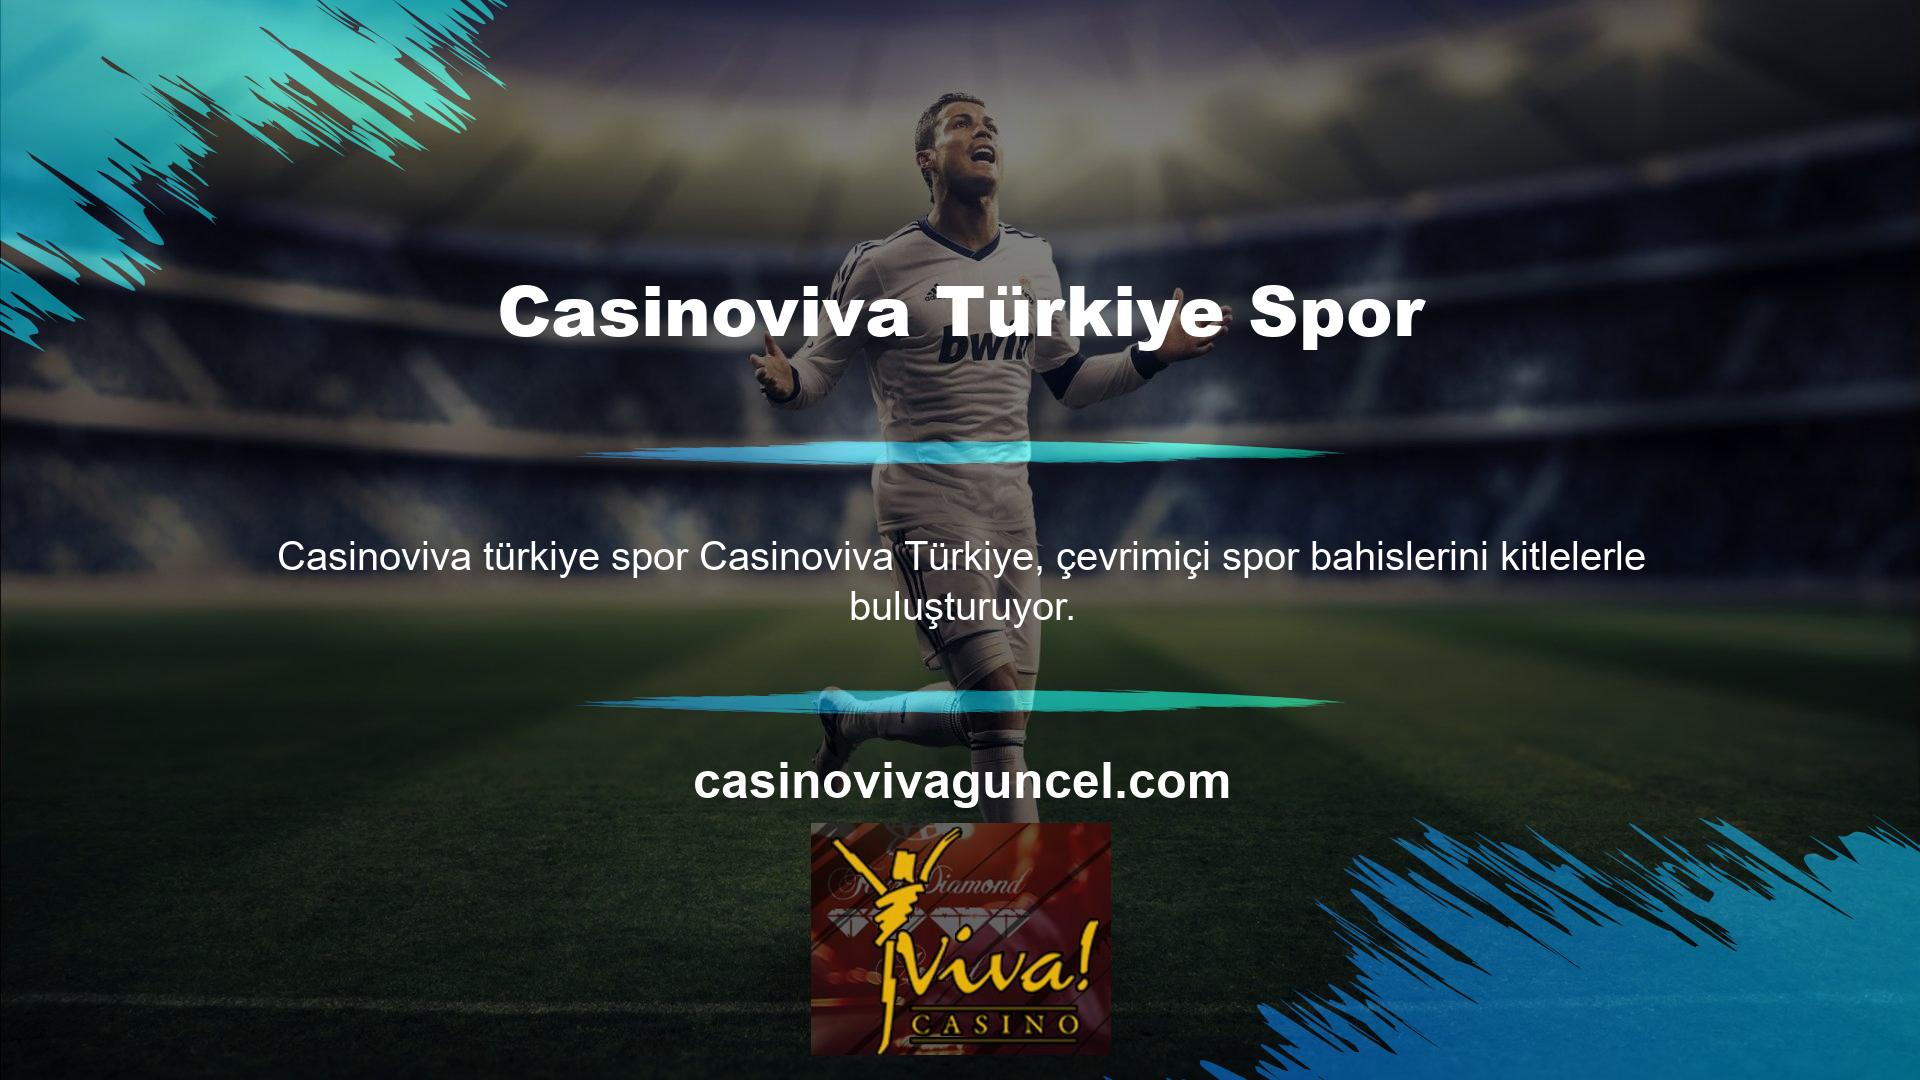 Casinoviva Türkiye'de basit ve sezgisel bir arayüz sayesinde herkes favori sporlarına kolaylıkla bahis oynayabilir